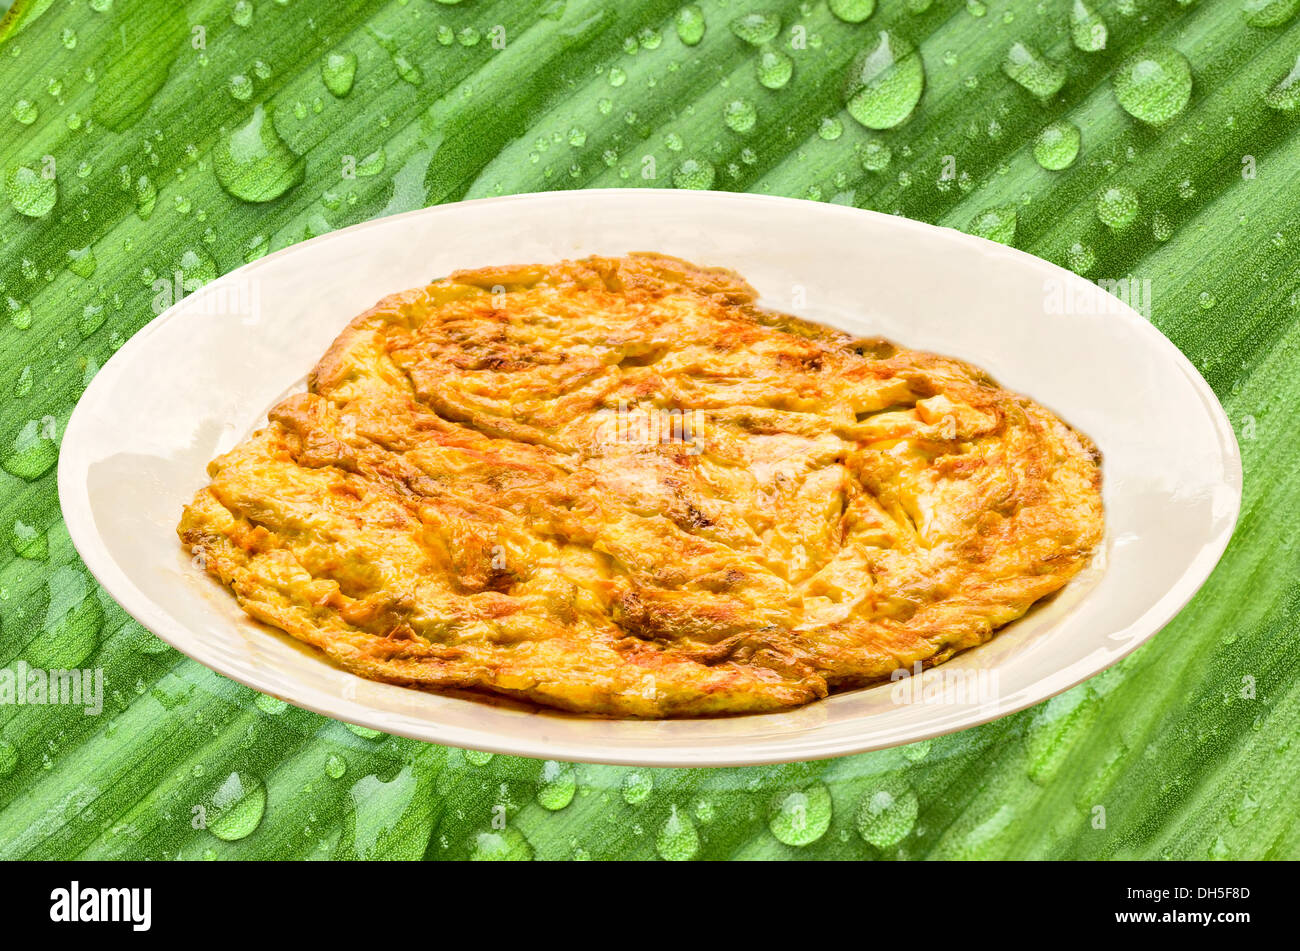 Plain egg omelette on green nature Stock Photo